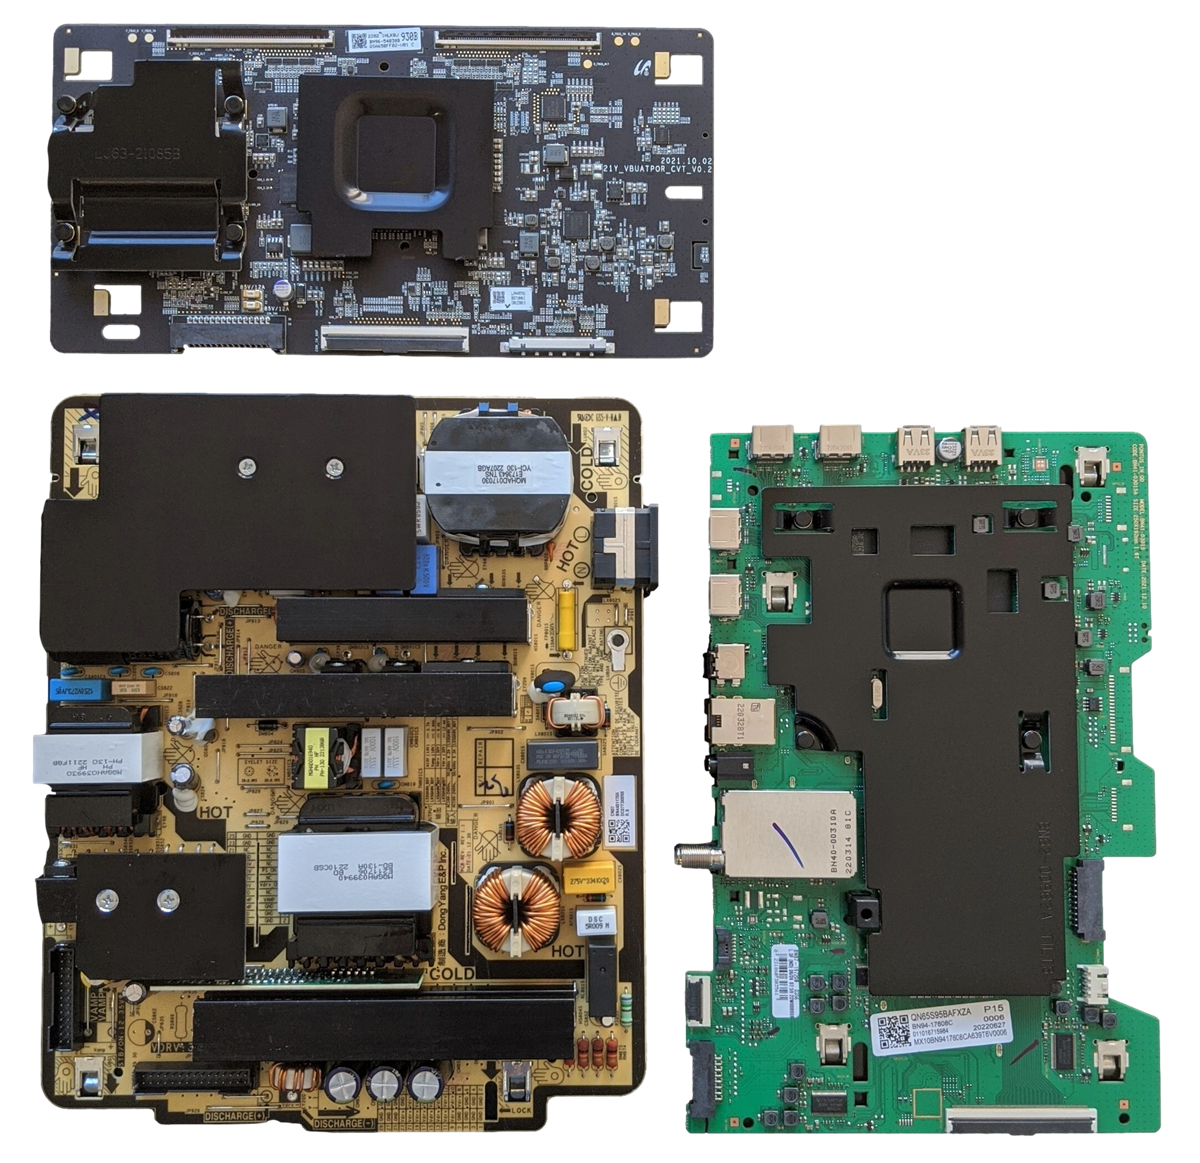 QN65S95BAFXZA Samsung TV Repair Parts Kit, BN94-17608C Main Board, BN44-01170A Power Supply, BN96-54038B T-Con, BN59-01405A Wifi, QN65S95BAFXZA